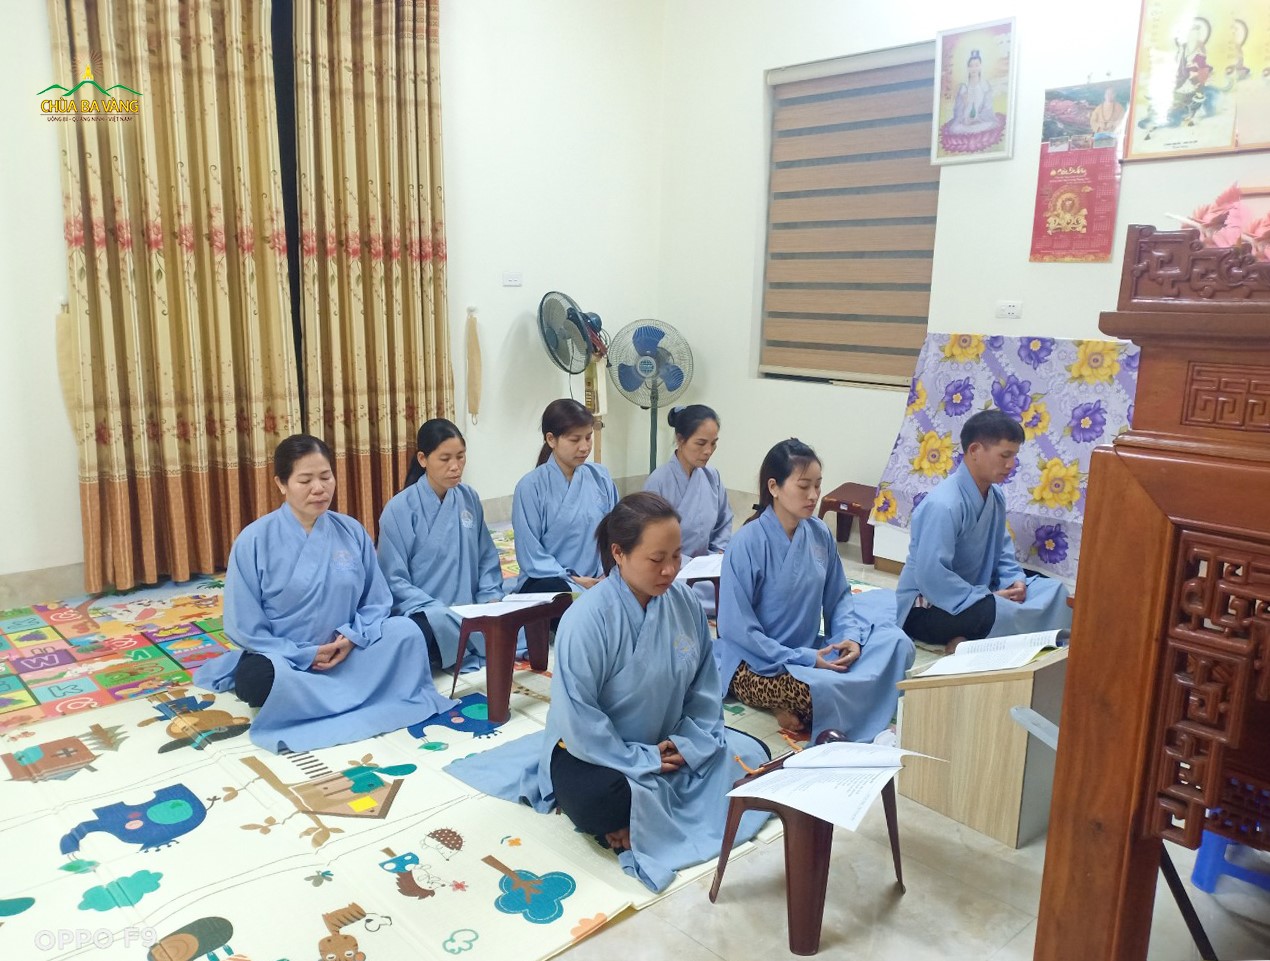 Thời khóa ngồi thiền trong chương trình “Tuần lễ tu tập thiền quán kỷ niệm sự kiện Thái tử Tất Đạt Đa xuất gia” của các Phật tử chùa Ba Vàng